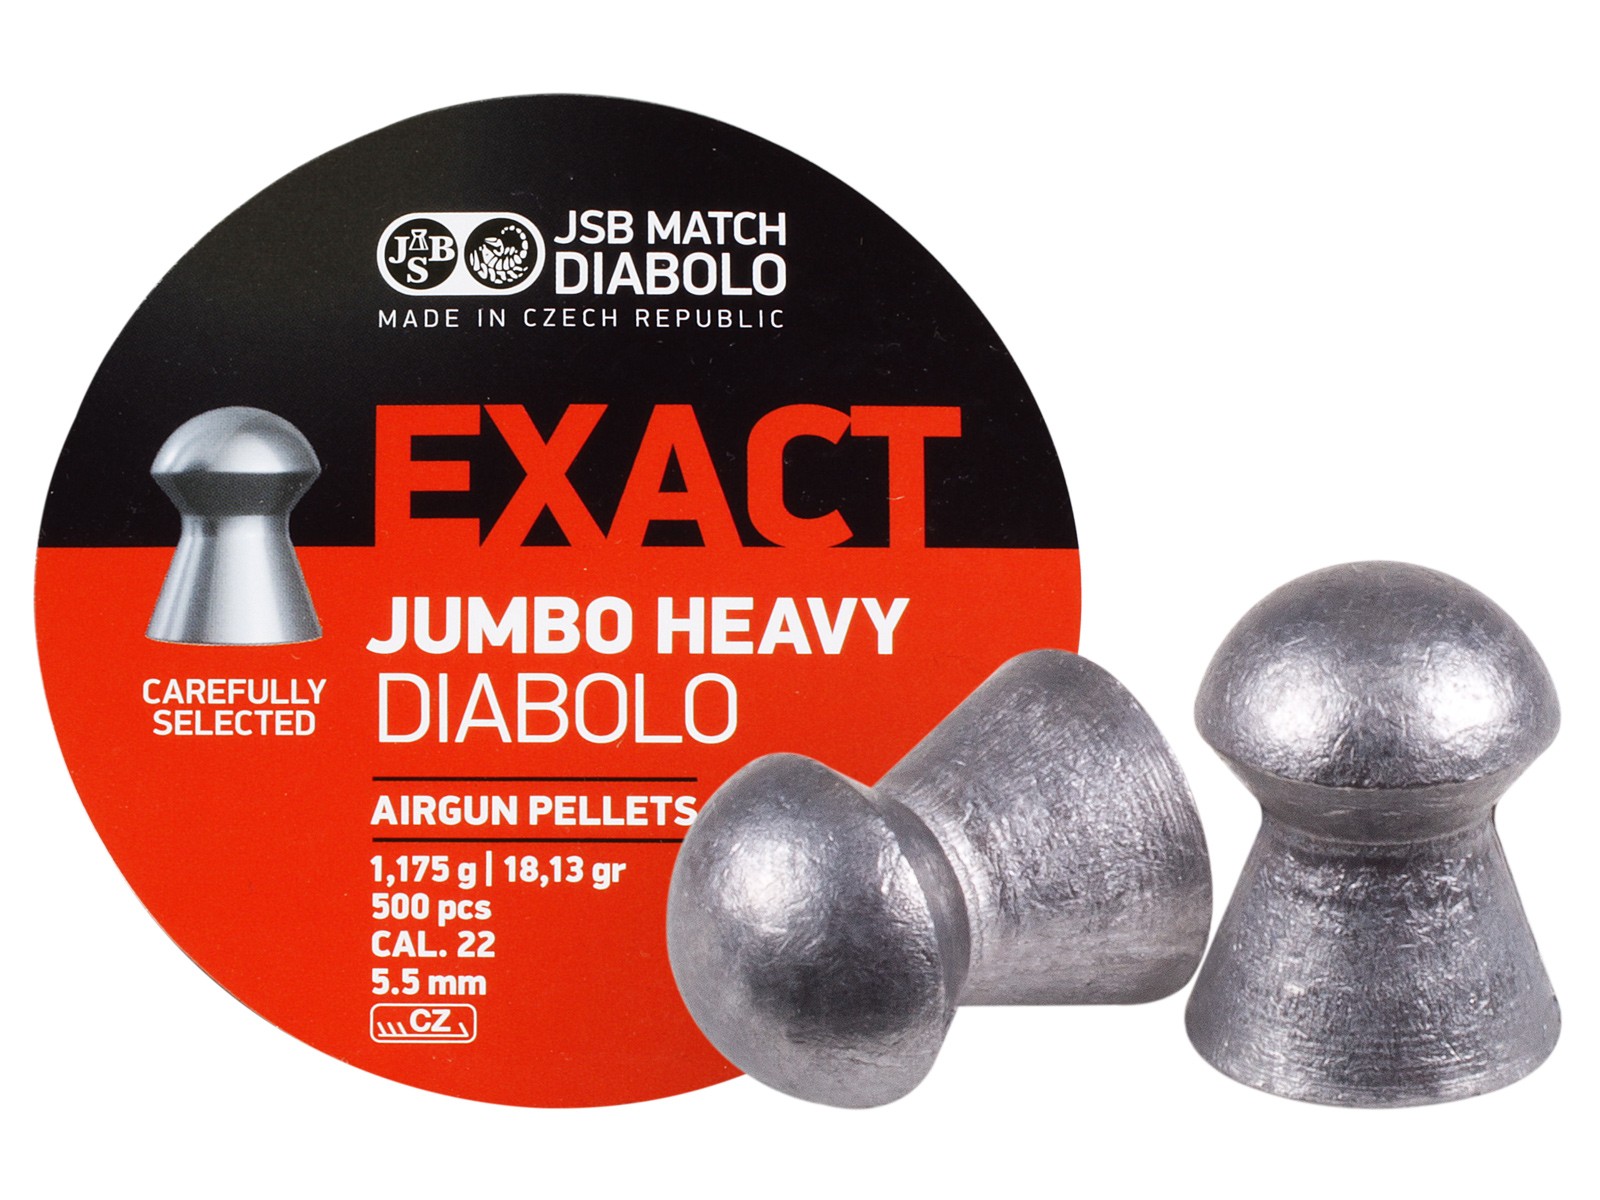 JSB Match Diabolo Exact Jumbo Heavy 22 cal pellet